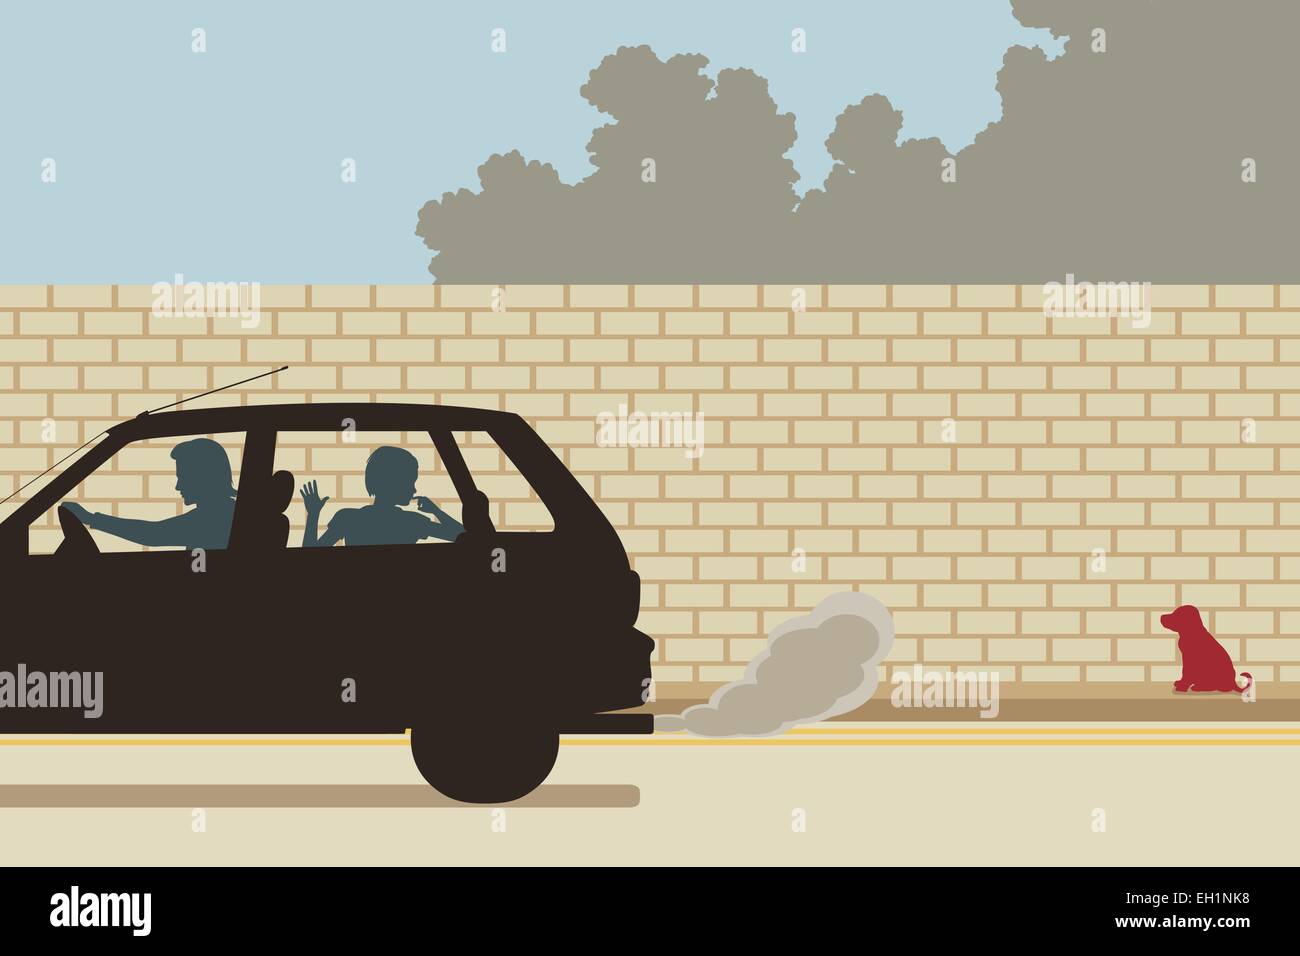 Bearbeitbares Vektor-Illustration eines Welpen, von einer Familie wegfahren verlassen Stock Vektor